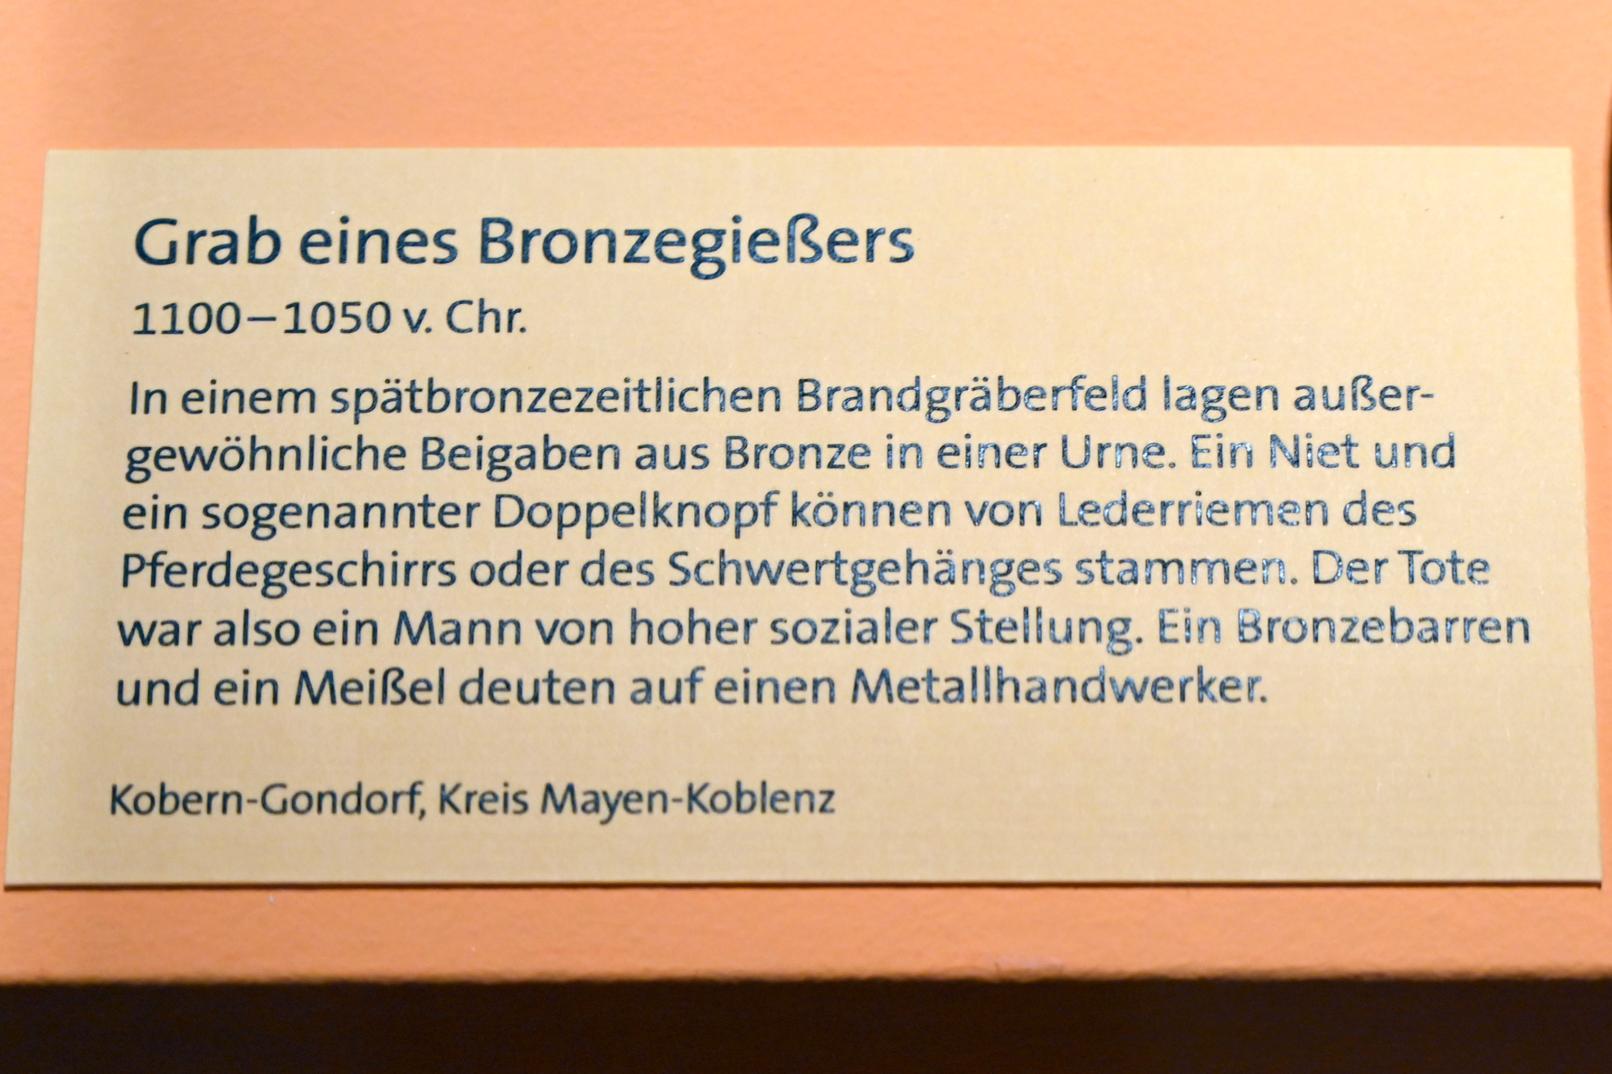 Grabbeigaben aus Bronze in einer Urne, Späte (Jüngere) Bronzezeit, 1500 - 700 v. Chr., 1100 - 1050 v. Chr., Bild 2/2